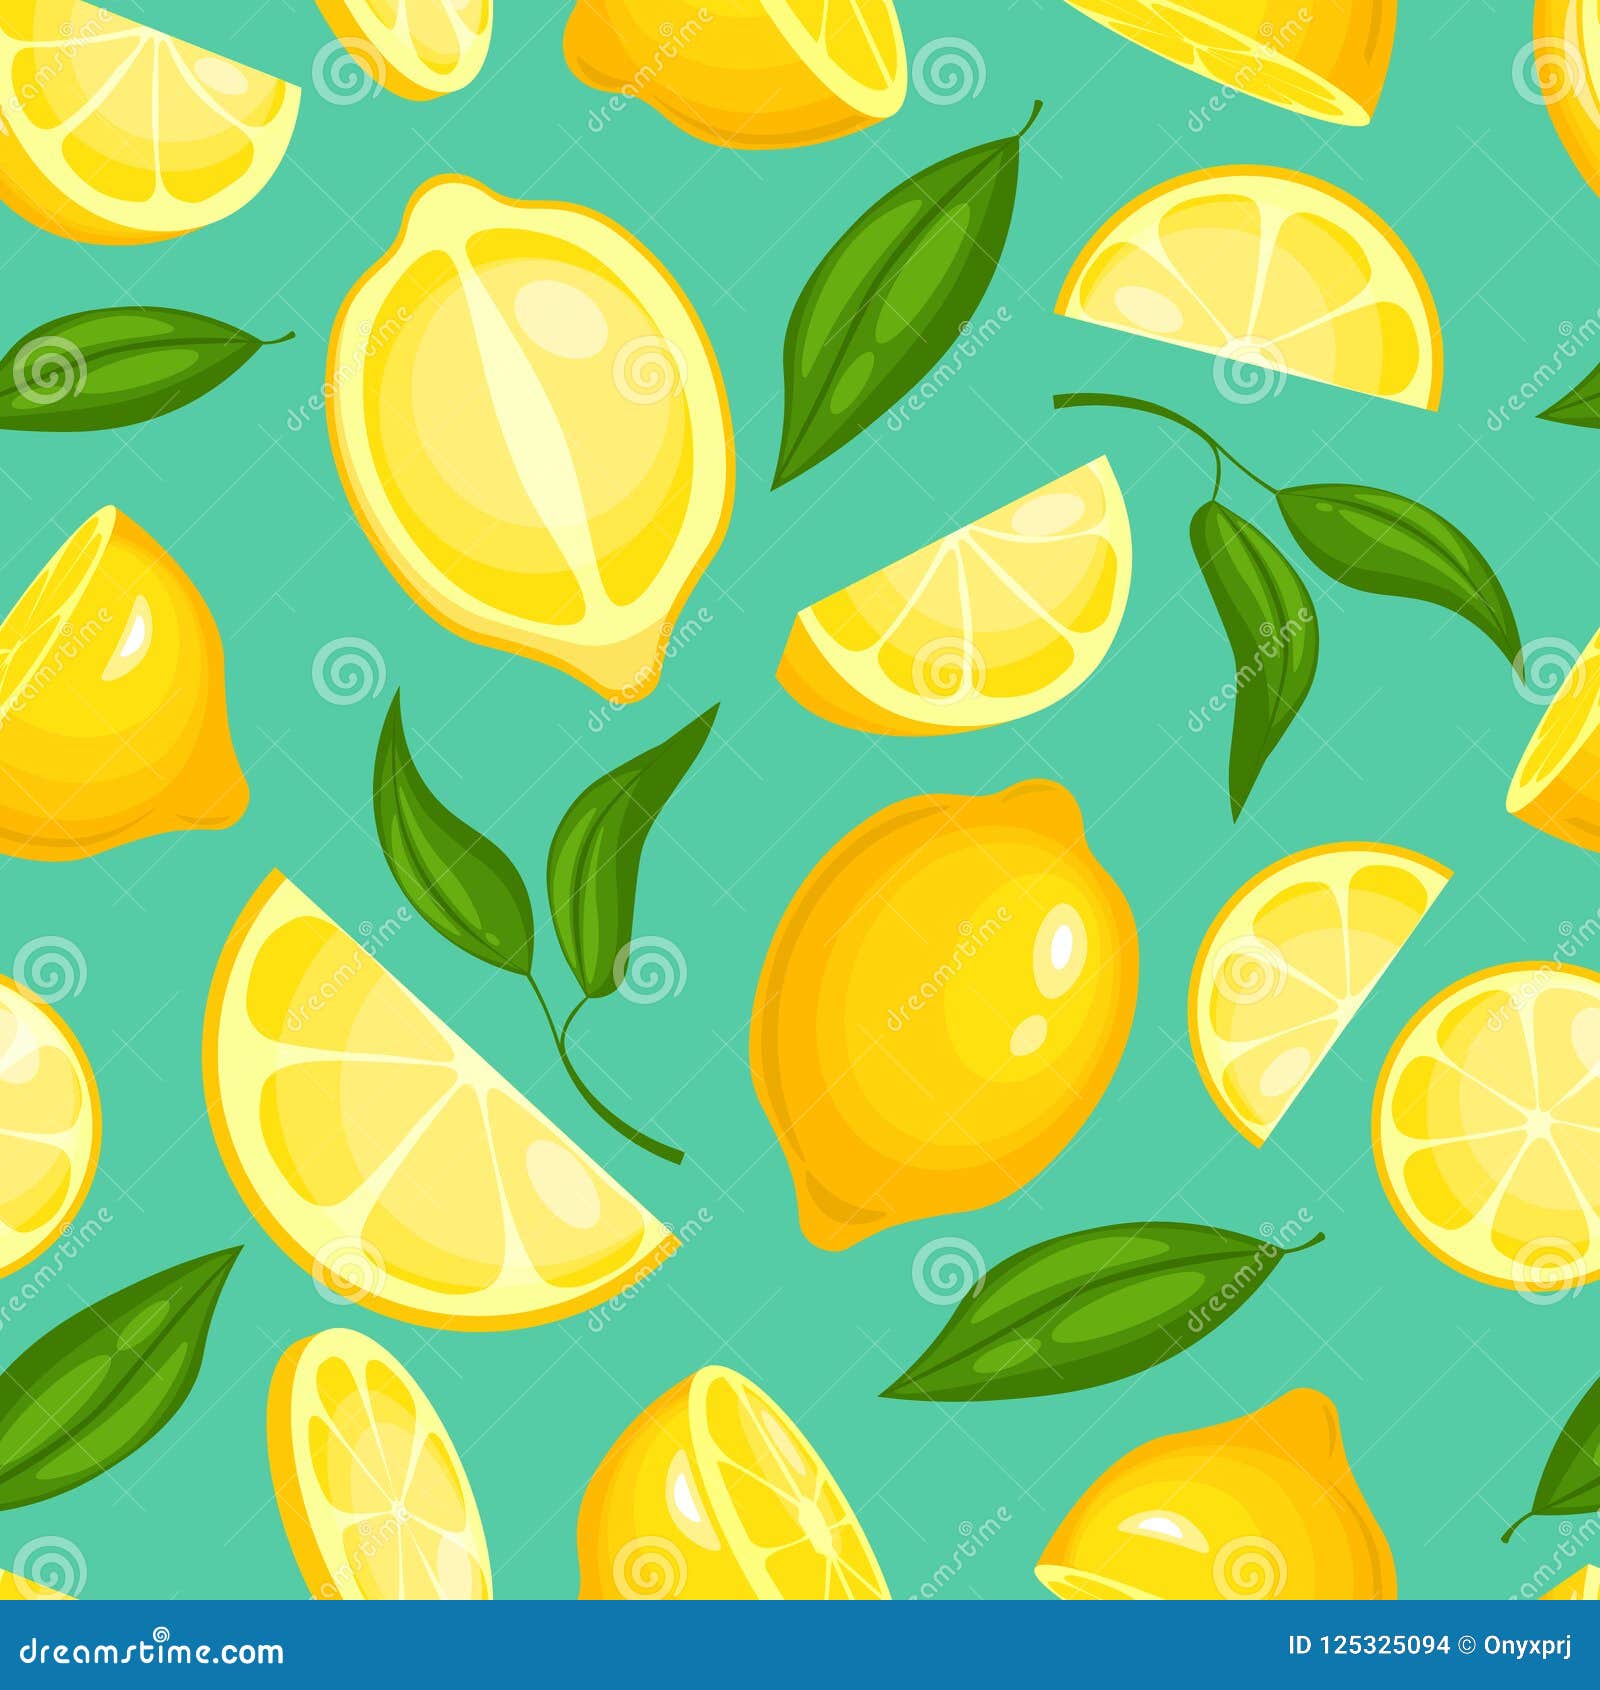 Lemon Wallpaper Illustration Stock Illustrations – 23,333 Lemon ...